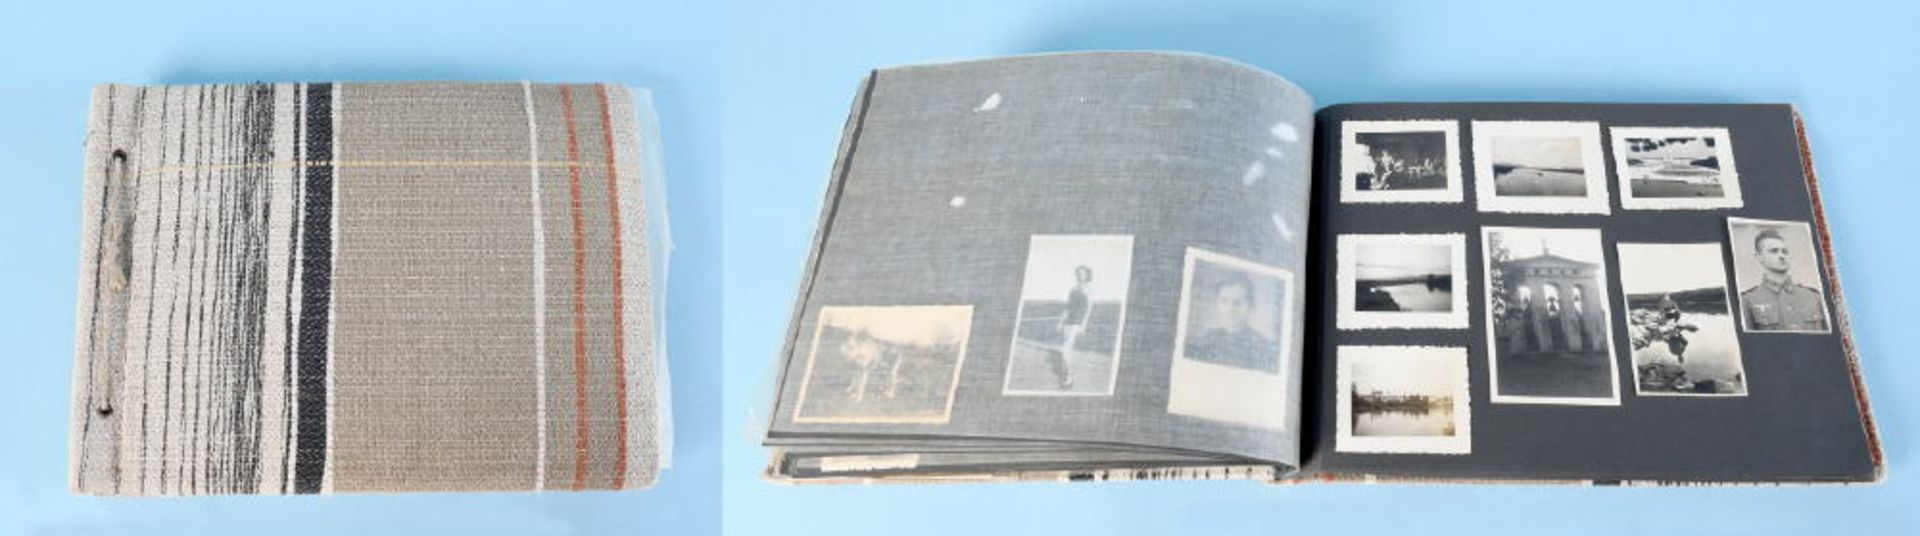 Fotografien, ca. 220 Stückmeist Bilder von Auslandseinsätzen, 3. Reich, im AlbumFotografien, ca. 220